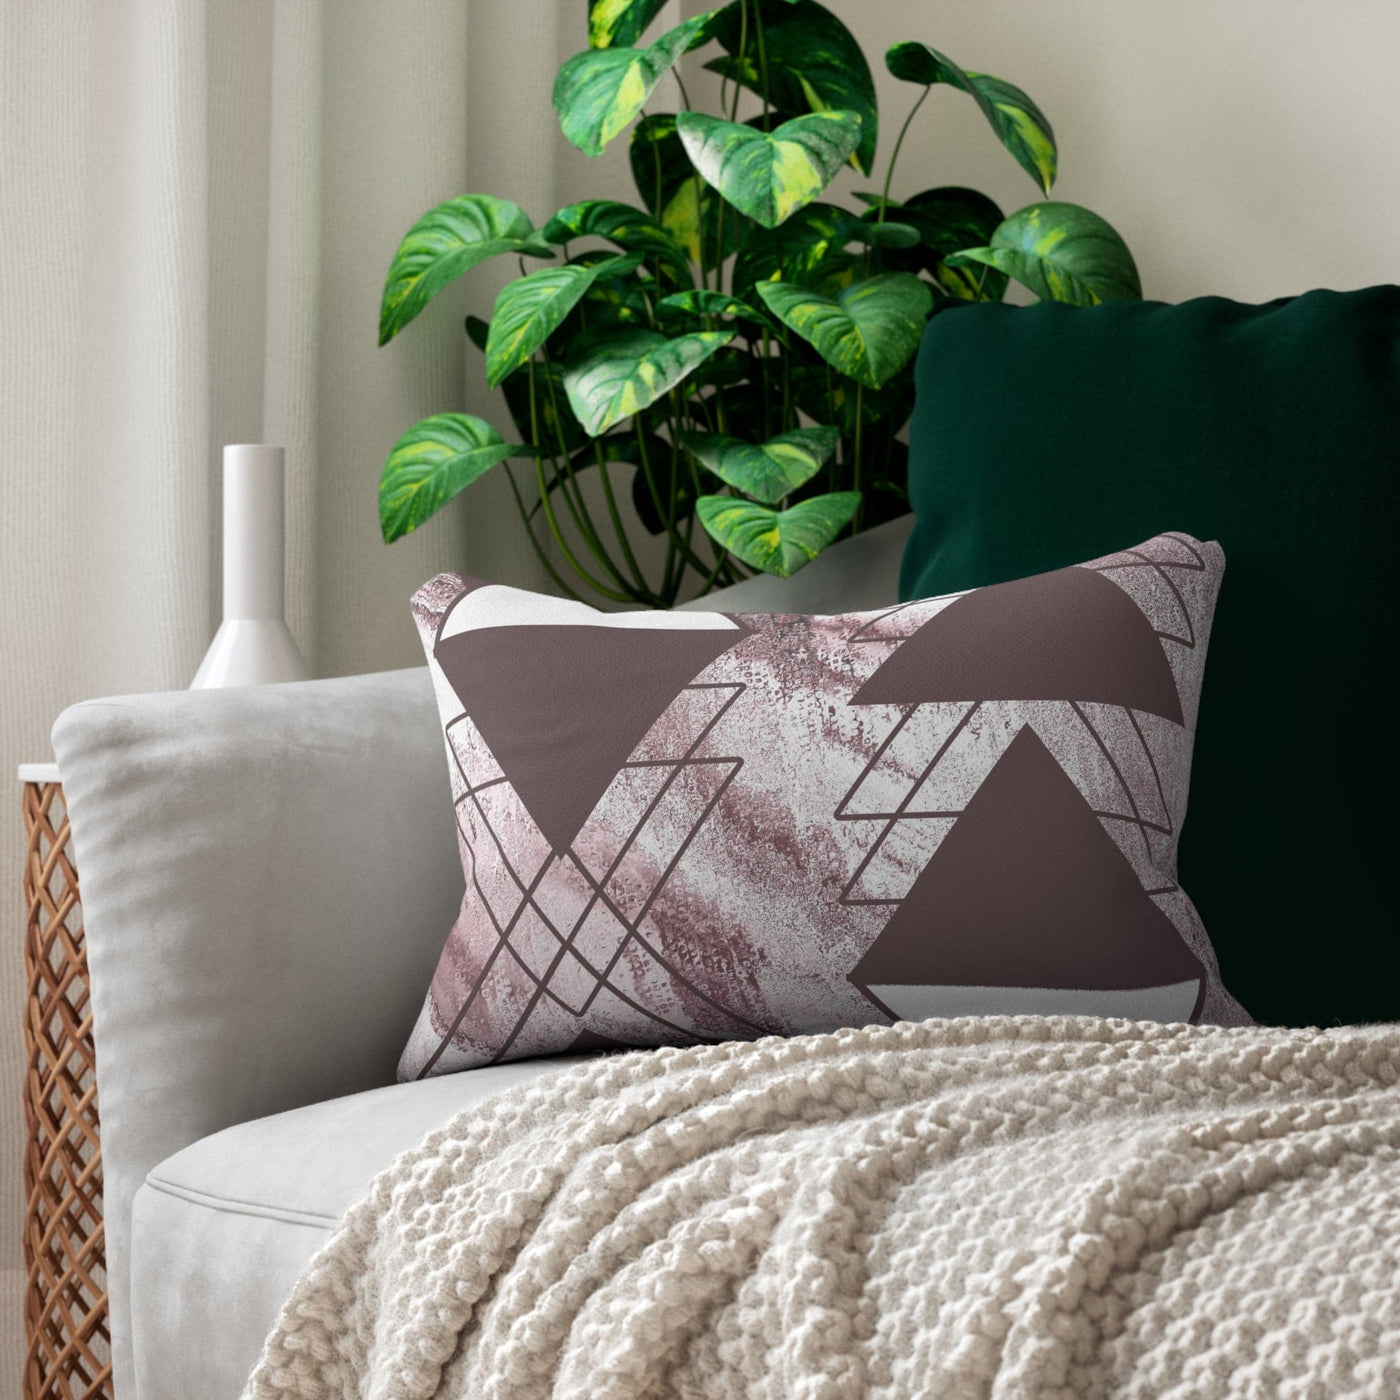 Decorative Lumbar Throw Pillow - Mauve Rose And White Triangular Colorblock